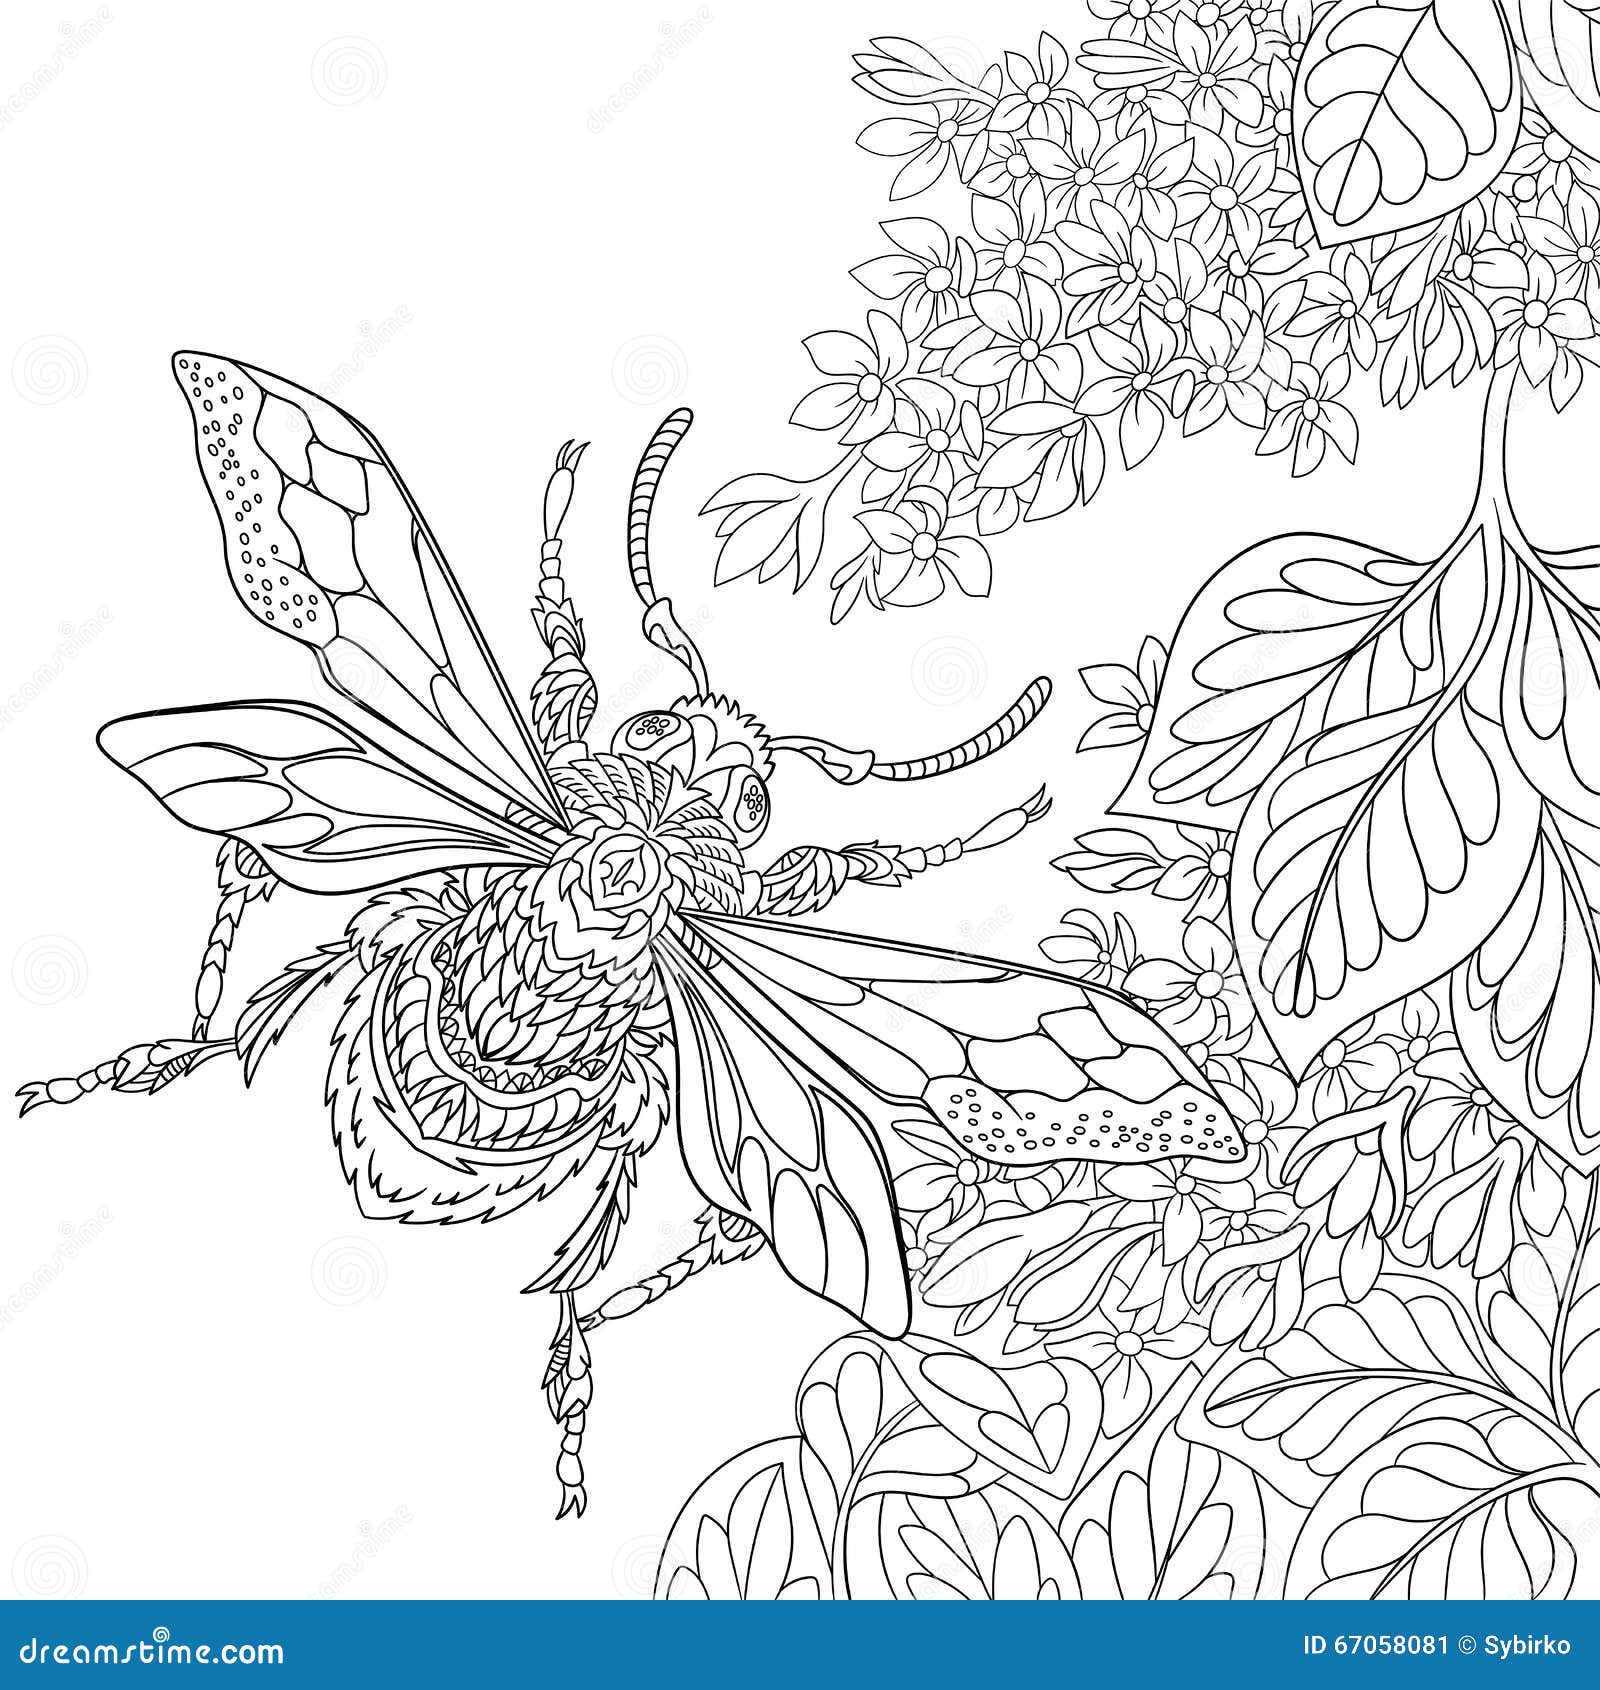 Zentangle Stylized Beetle Insect Stock Vector - Image: 67058081